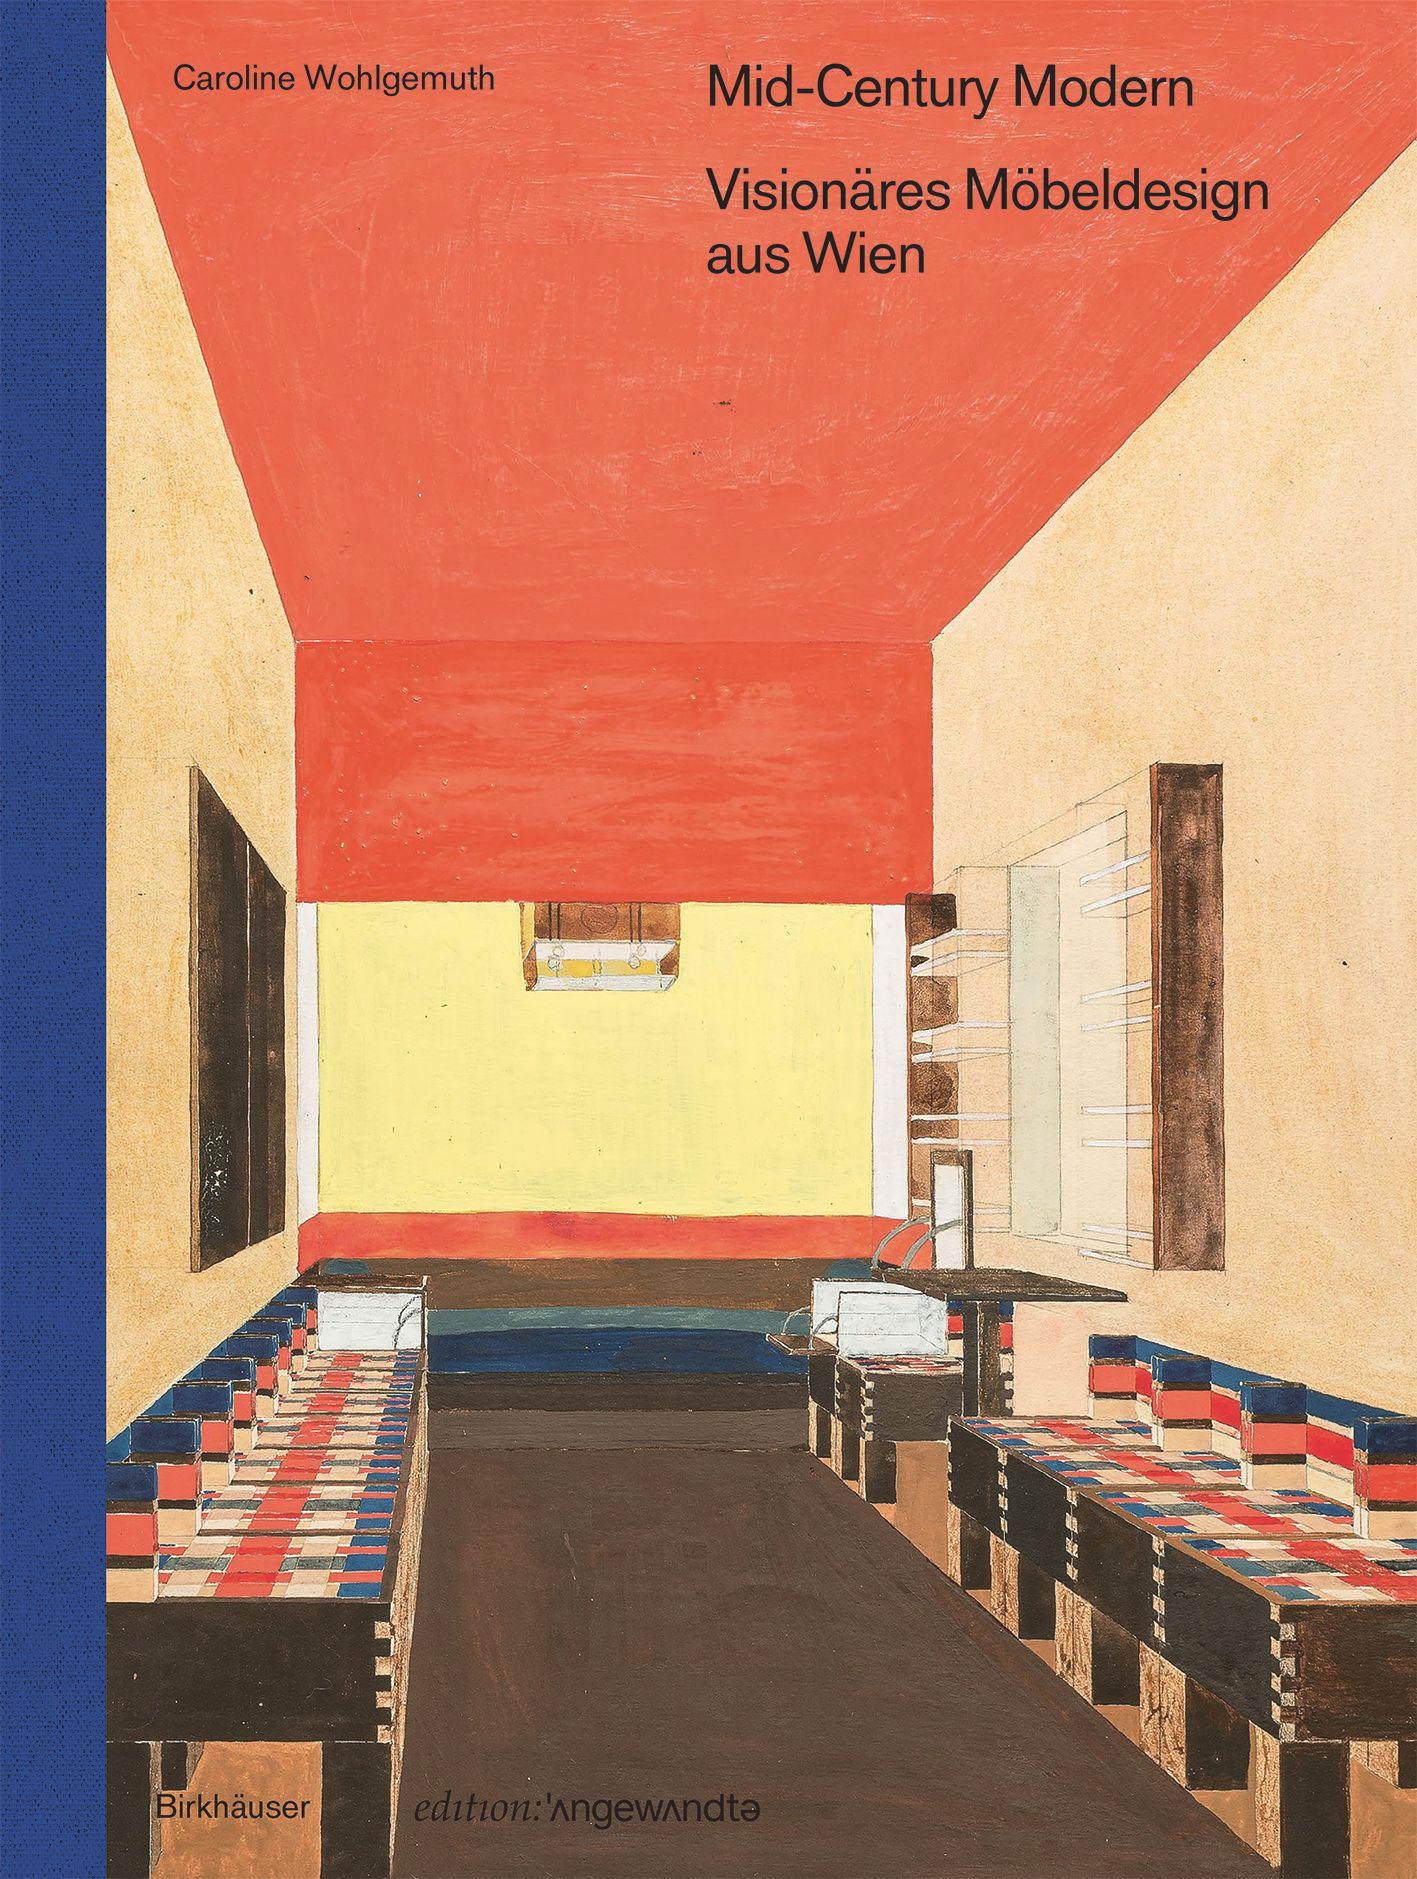 Mid-Century Modern – Visionäres Möbeldesign aus Wien's cover